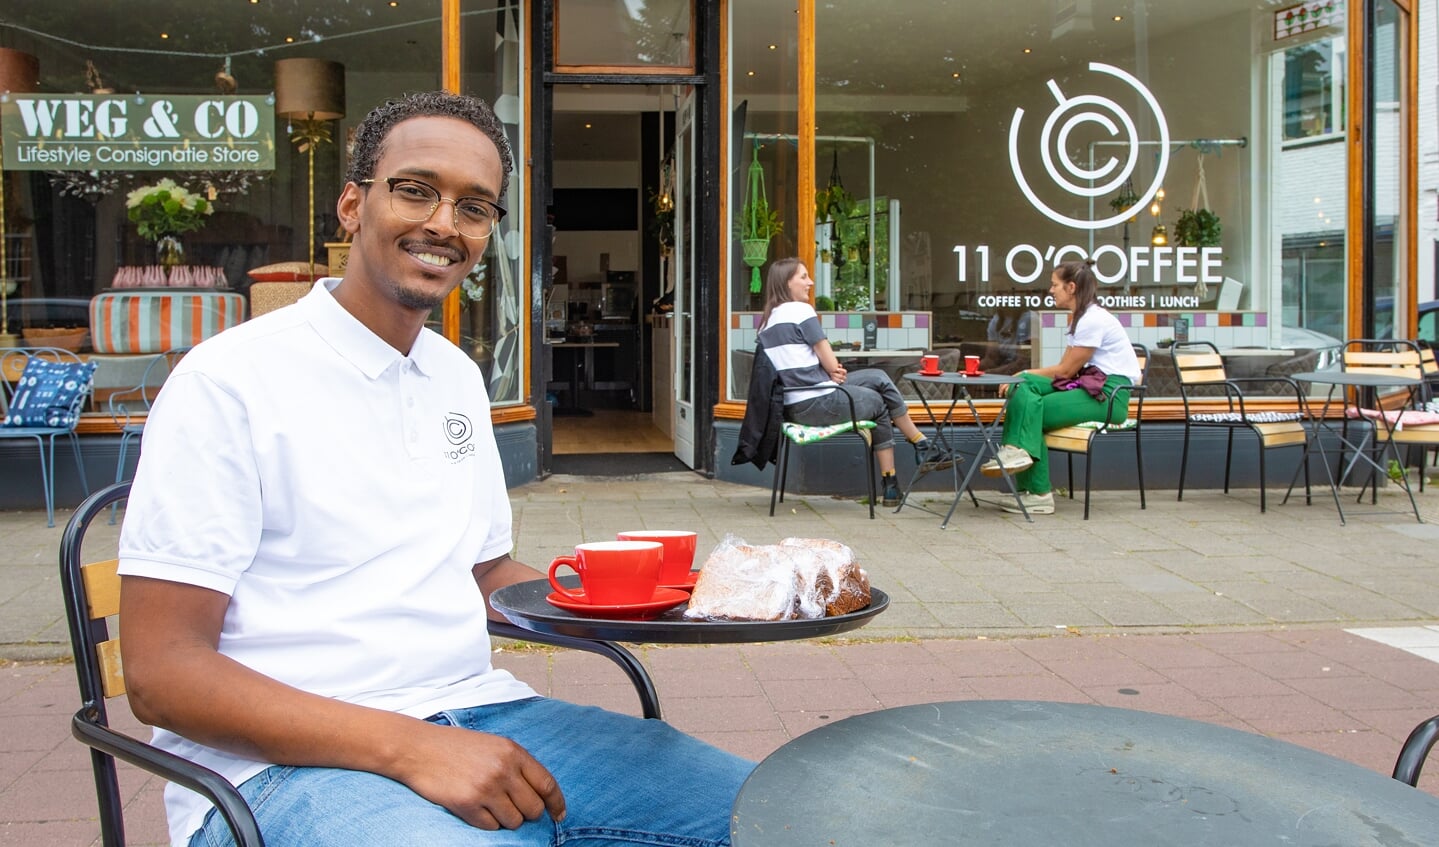 Ahmed Hussein was net twee weken eigenaar van zijn koffiebar toen de coronacrisis roet in het eten gooide.